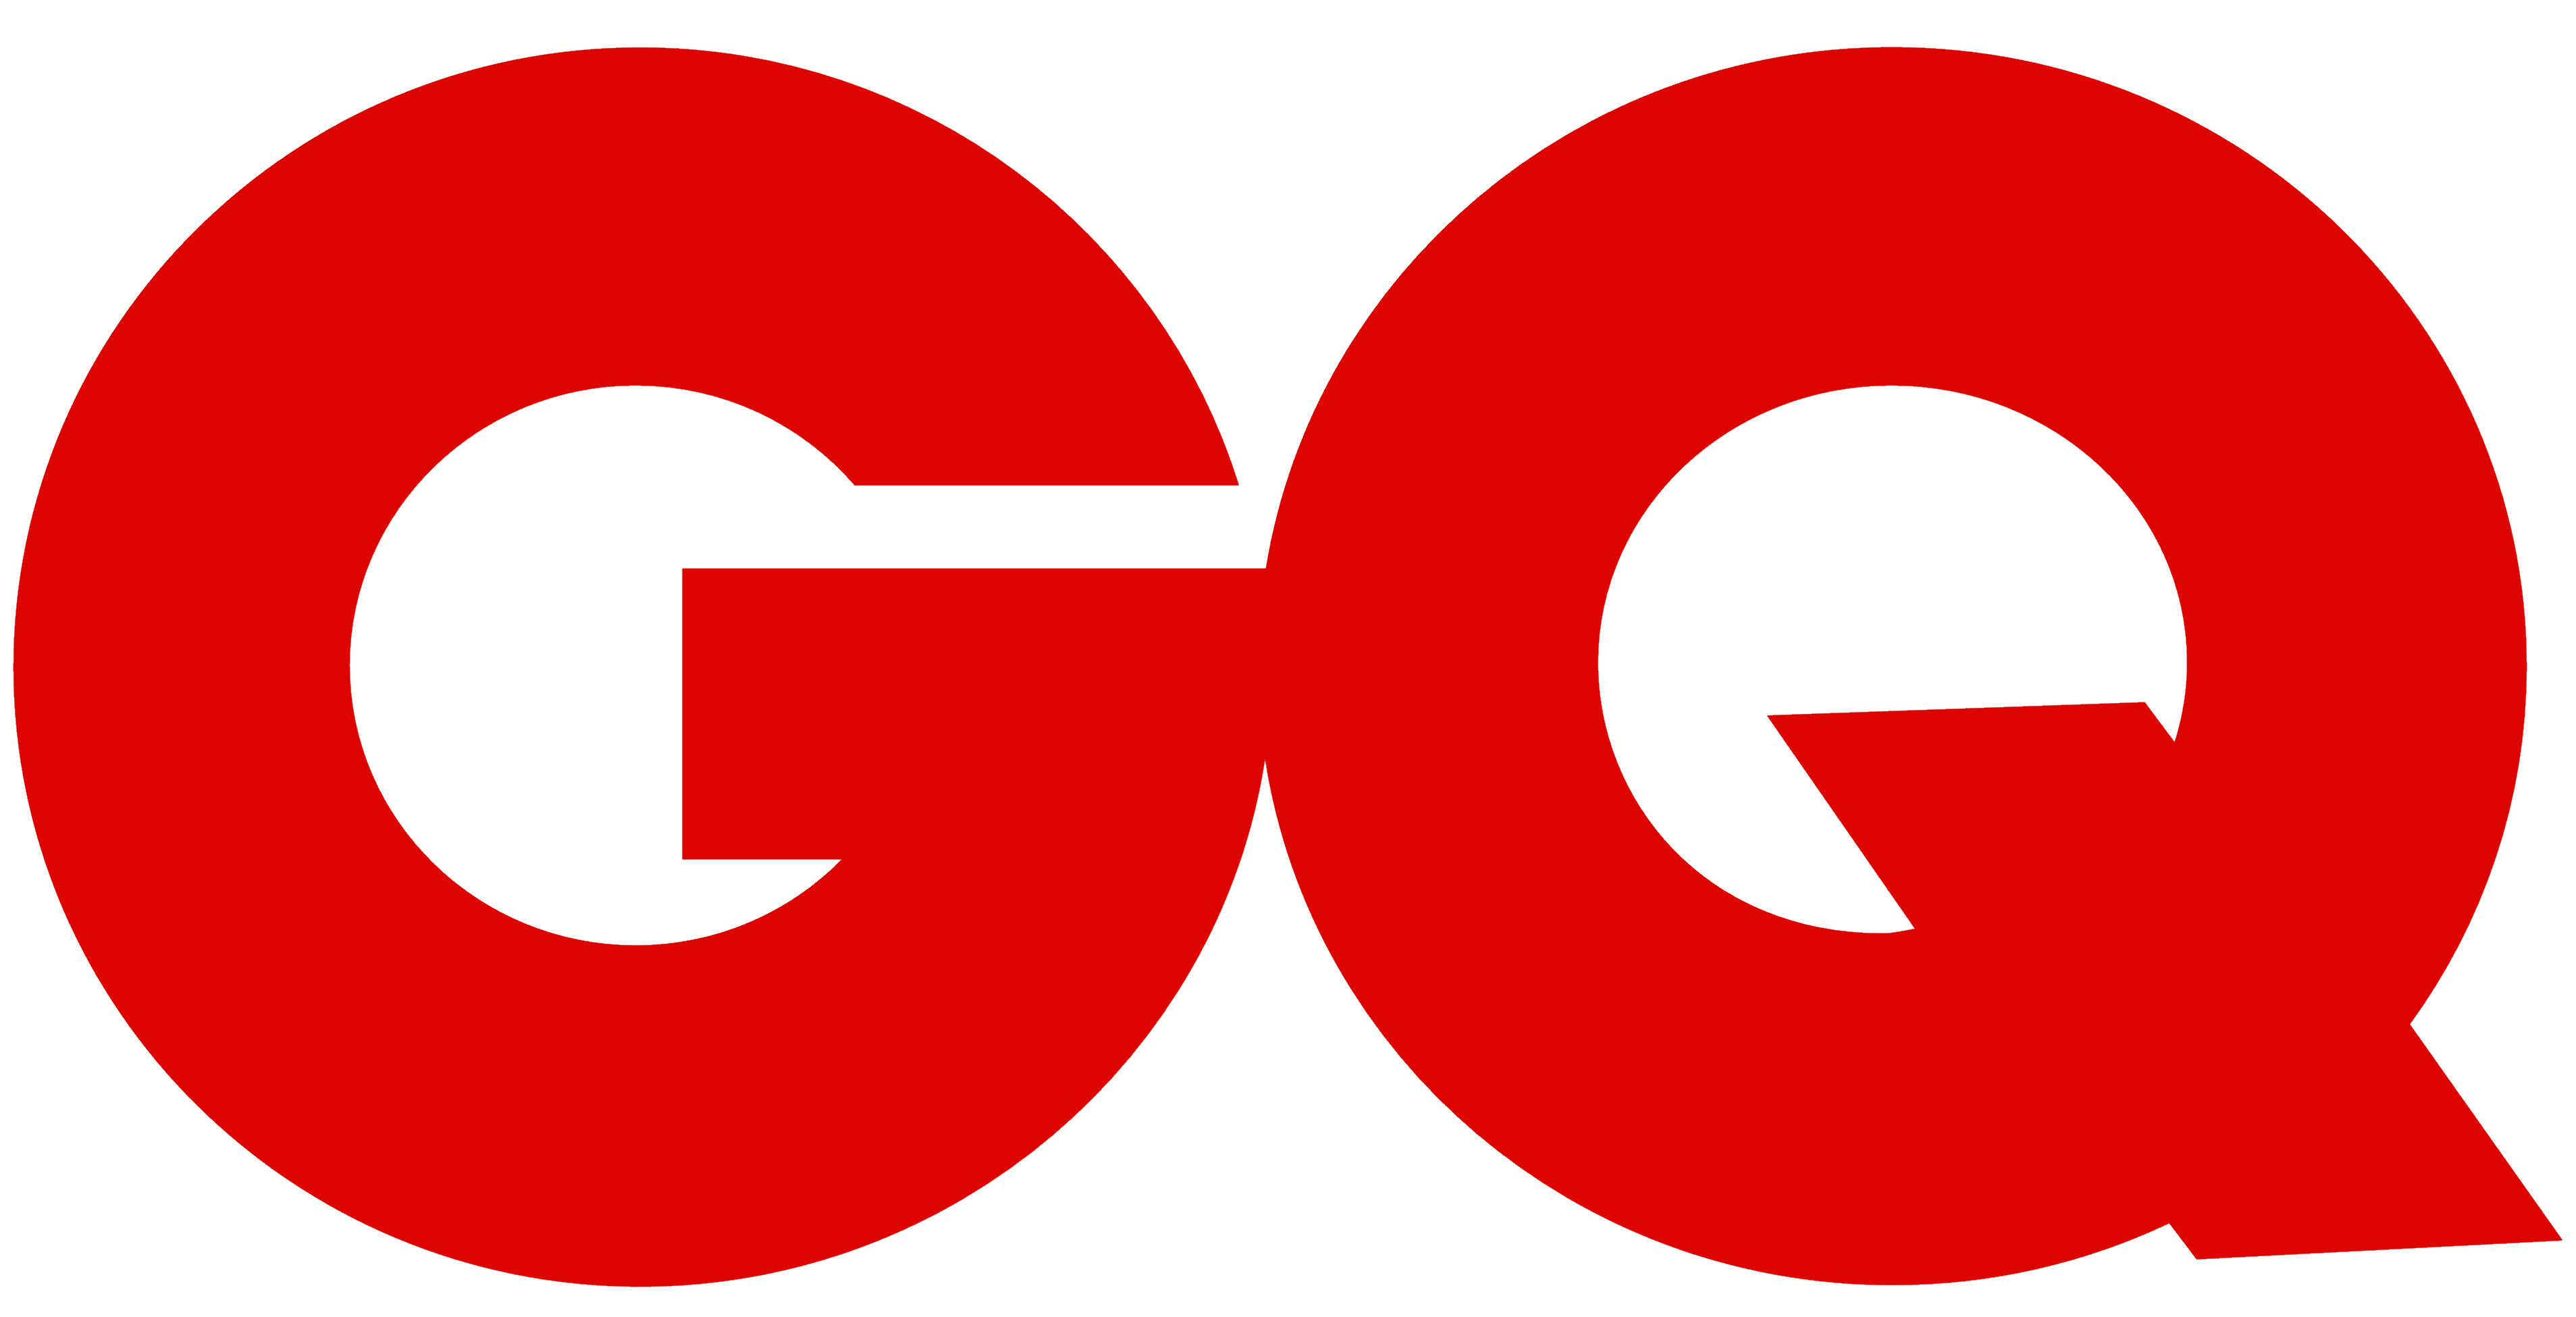 GQ logo, logotype